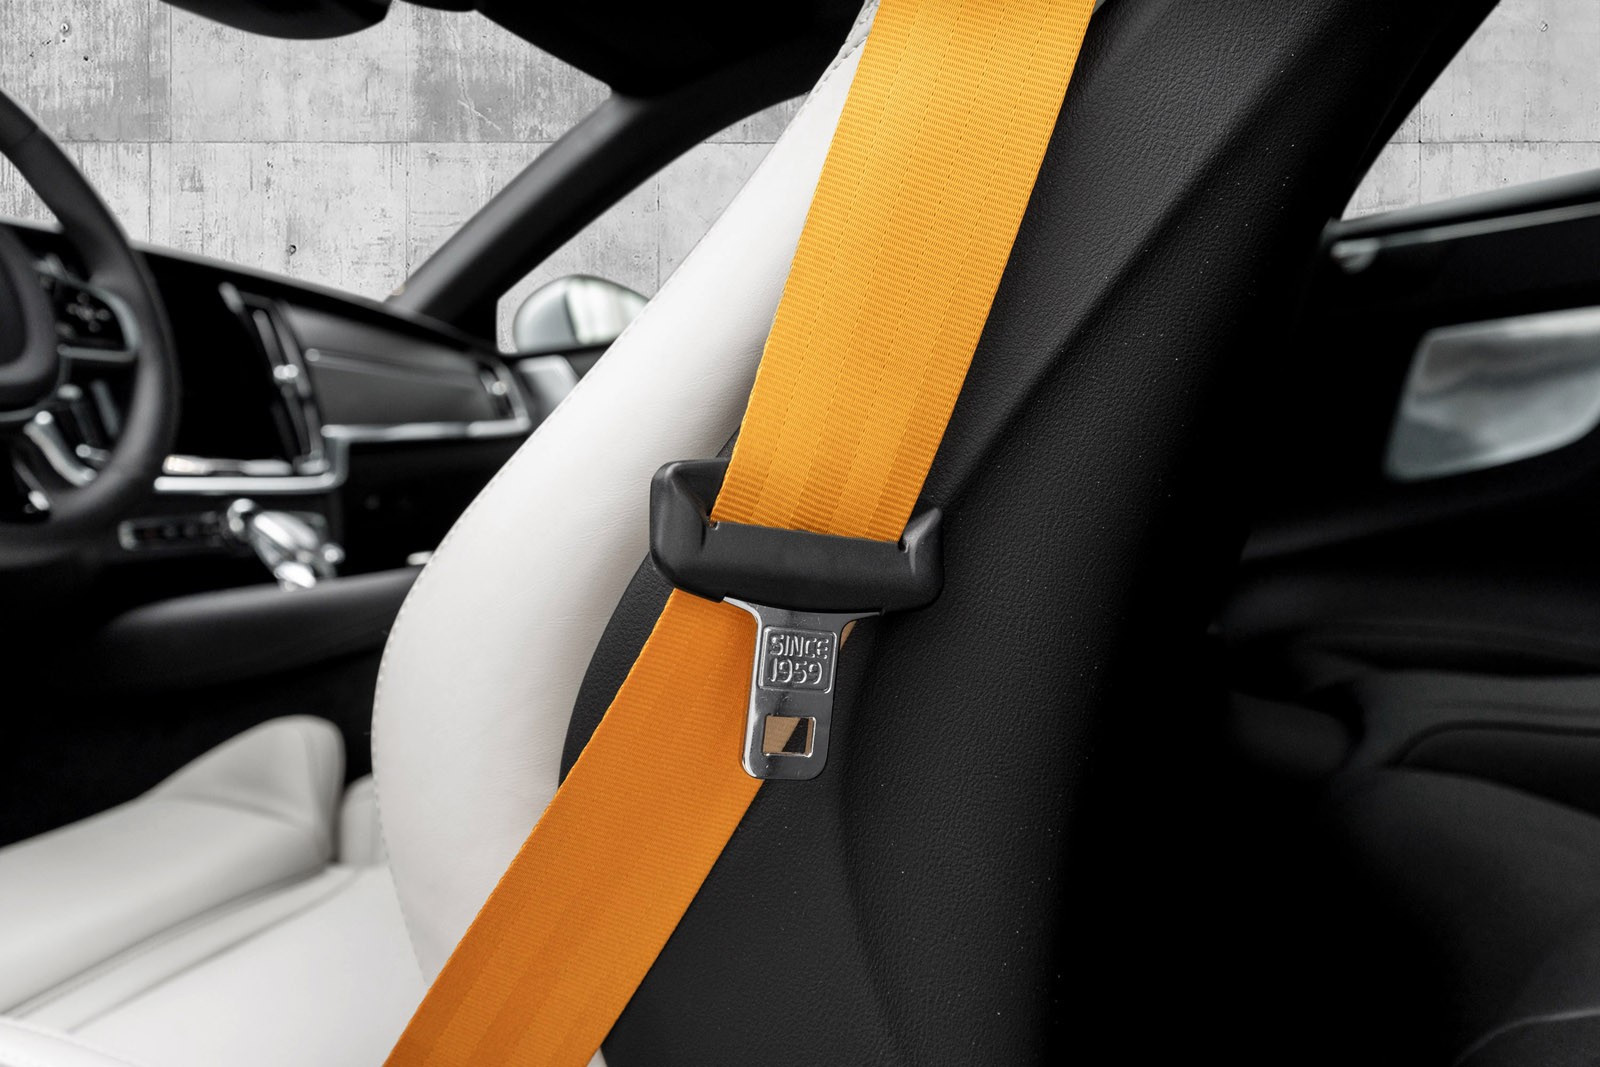 Lett å legge merke til de oransje Performance bilbeltene som er en lekker detalje